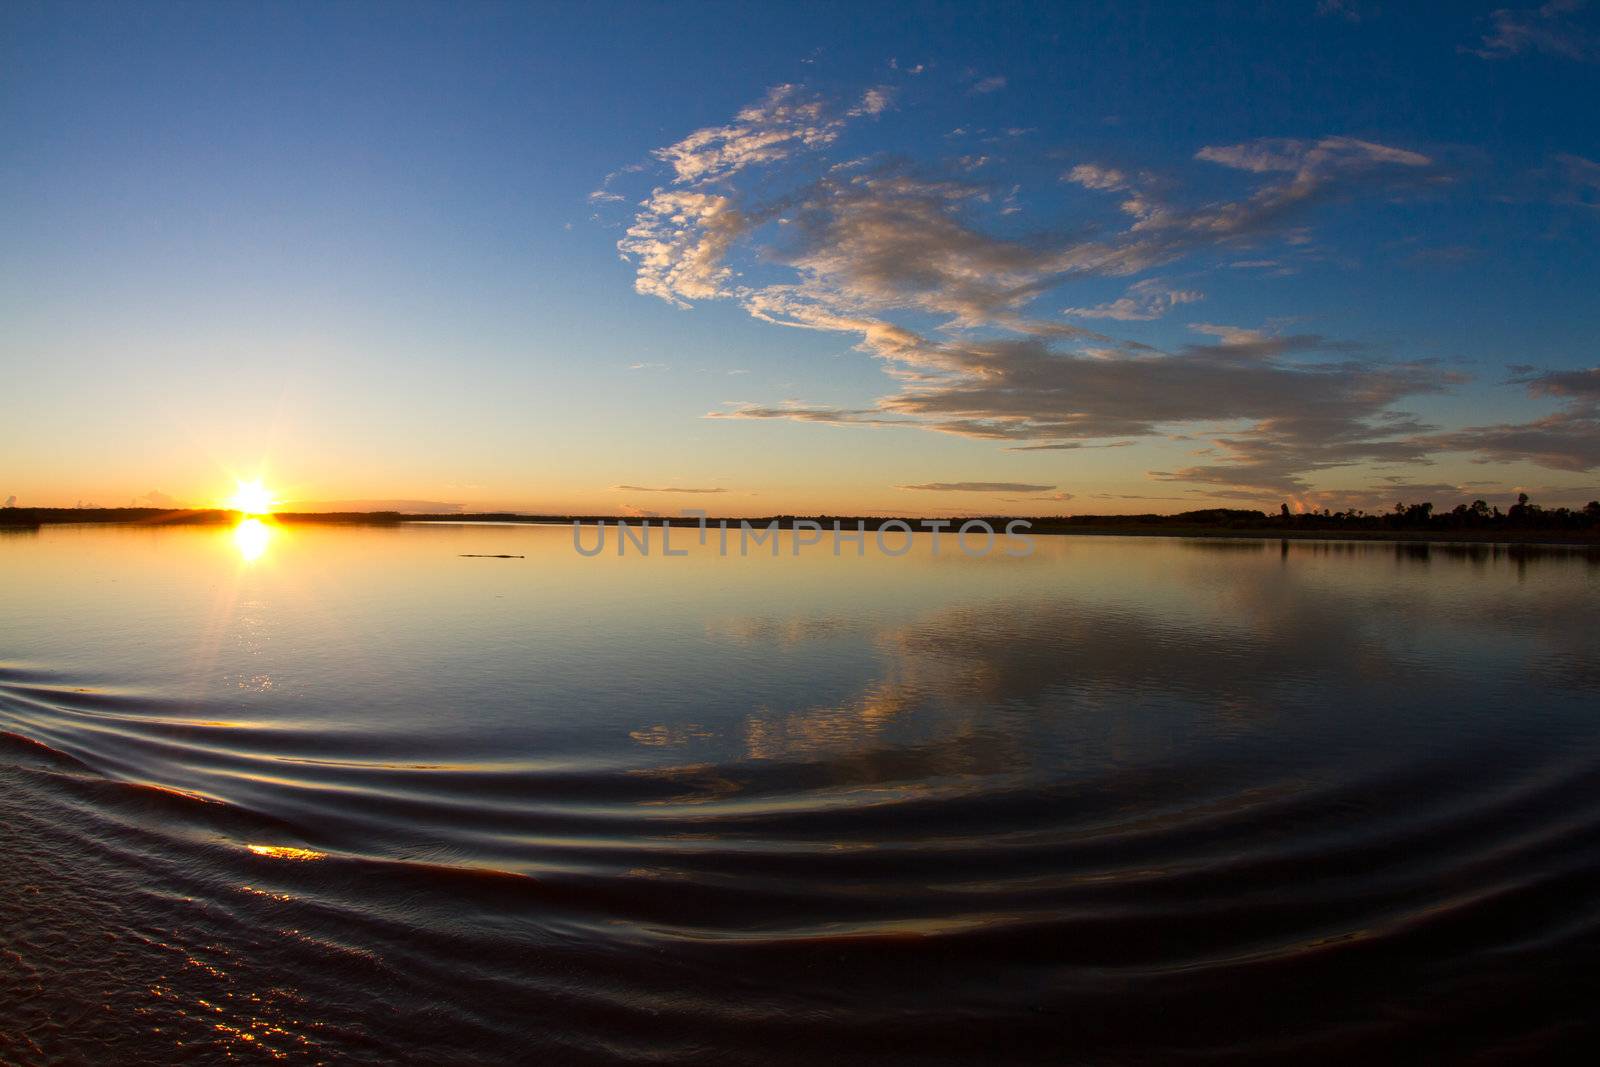 Sunrise on the Amazon river by MojoJojoFoto